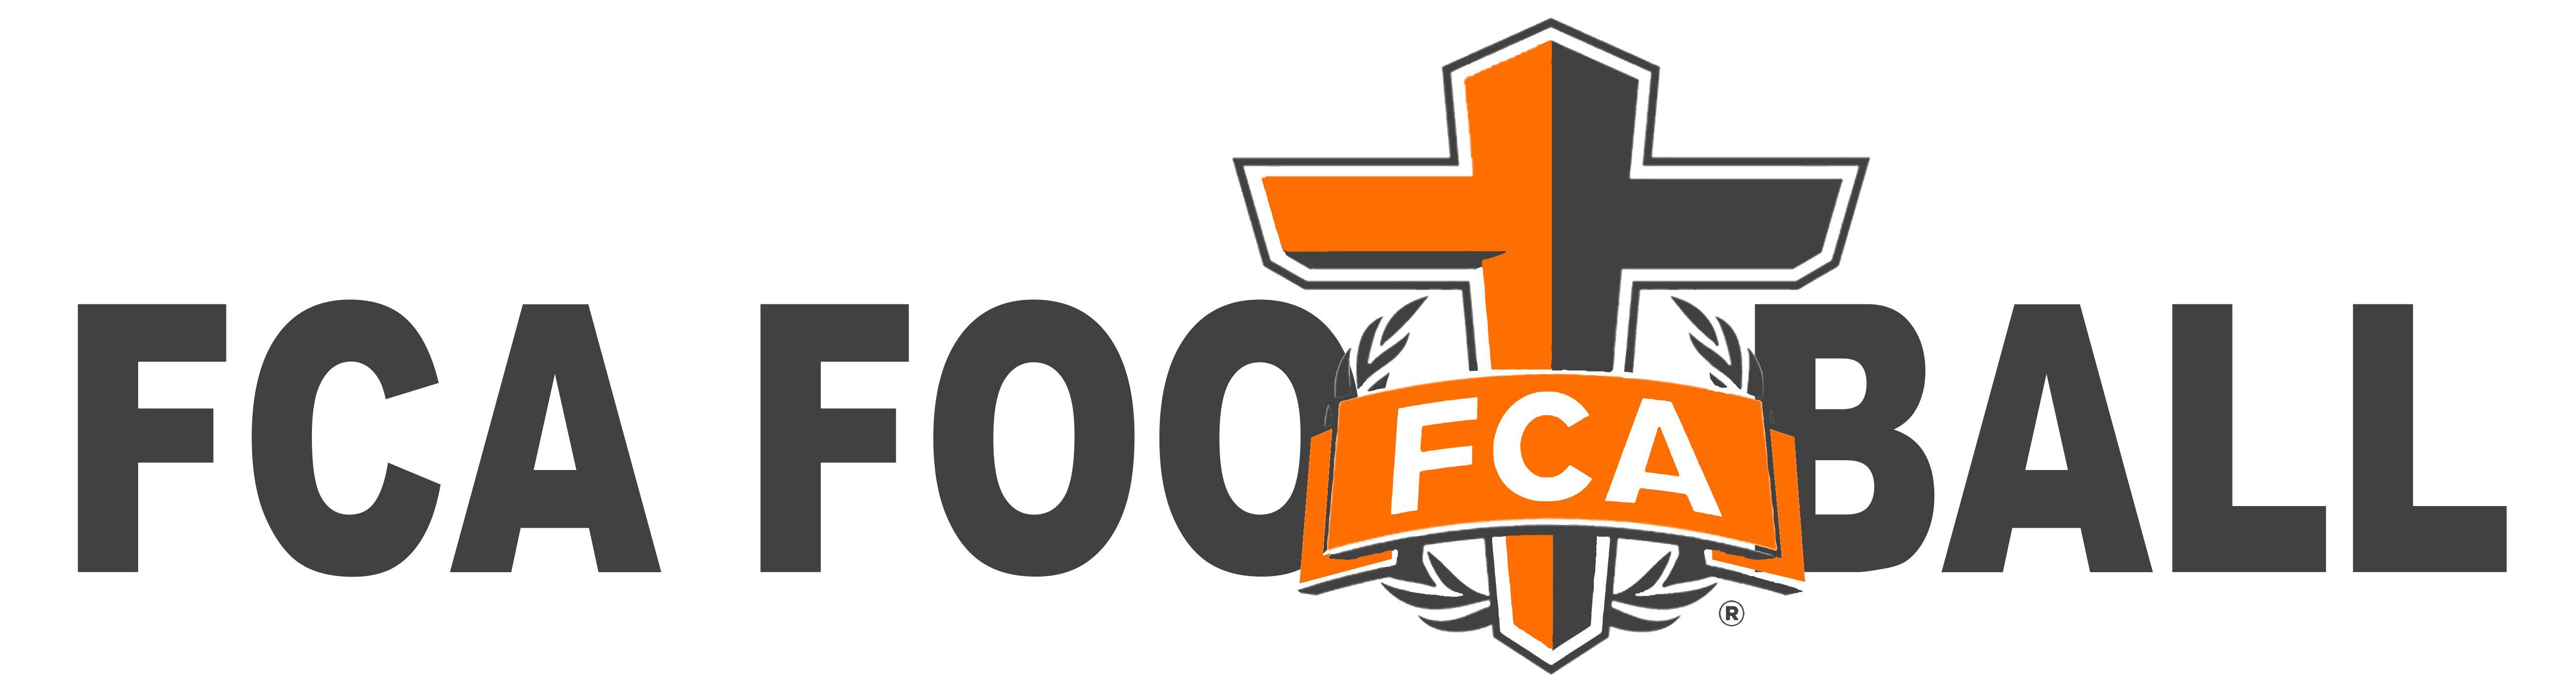 FCA Football Logo - Camps | Southeast Georgia FCA